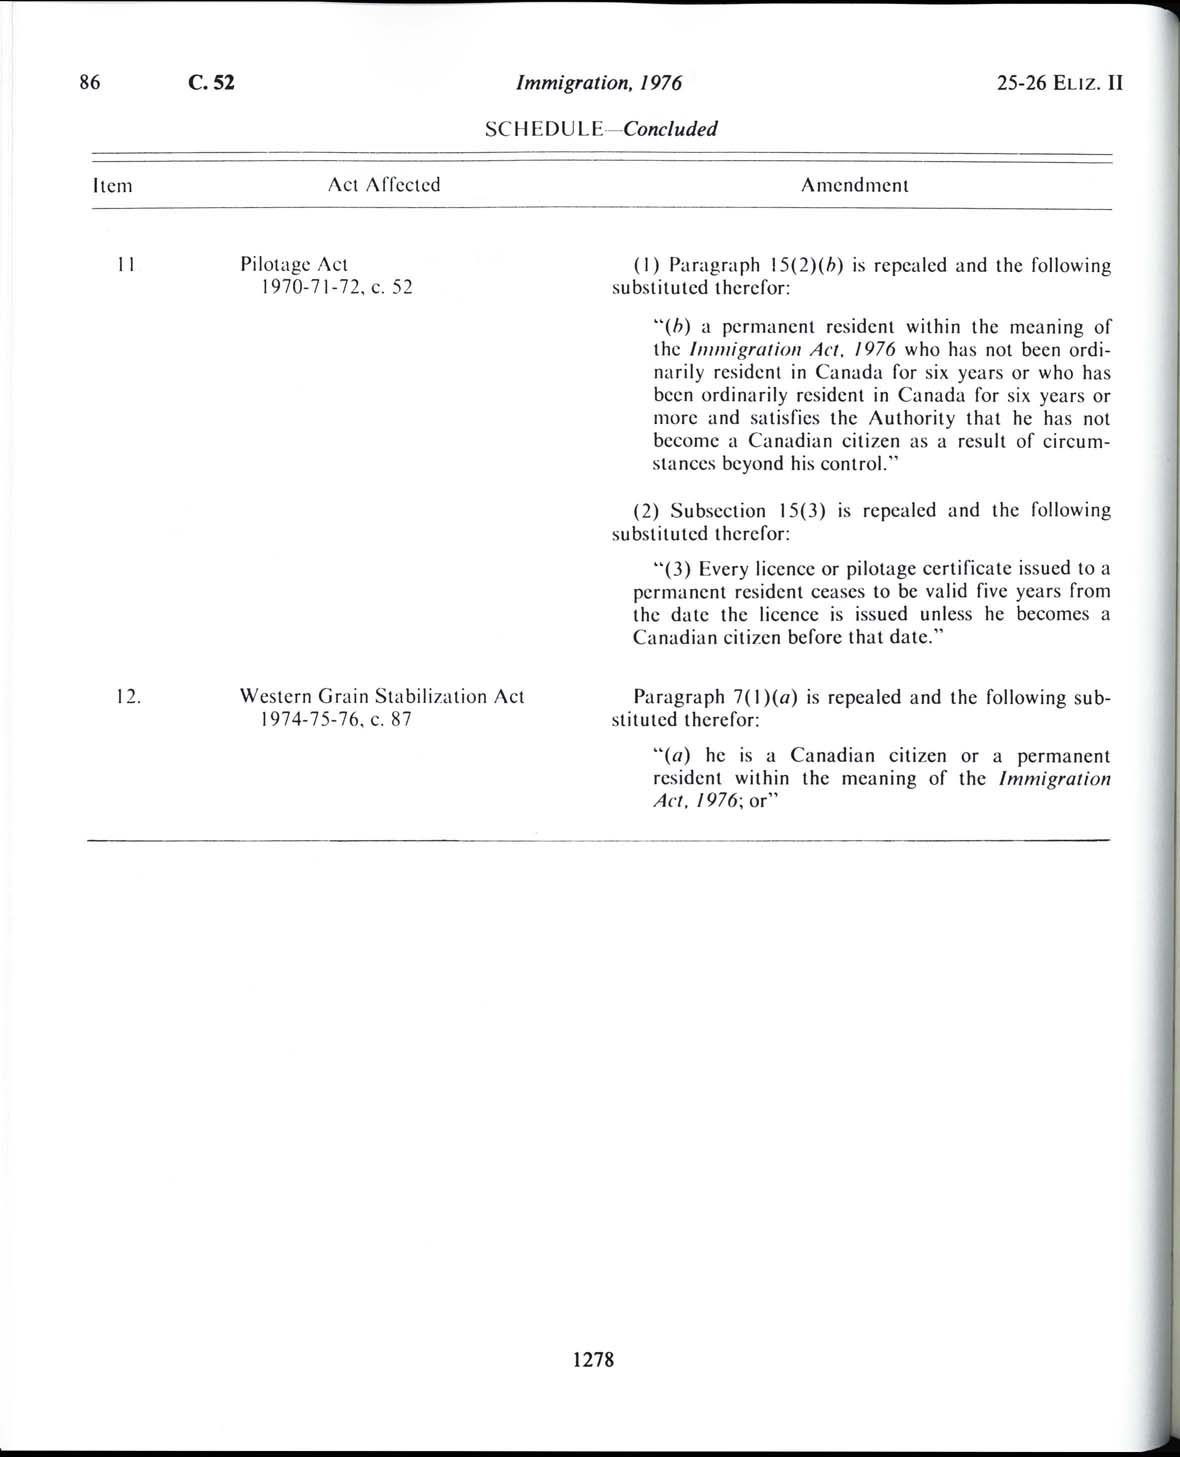 Page 1278 Loi sur l’immigration de 1976